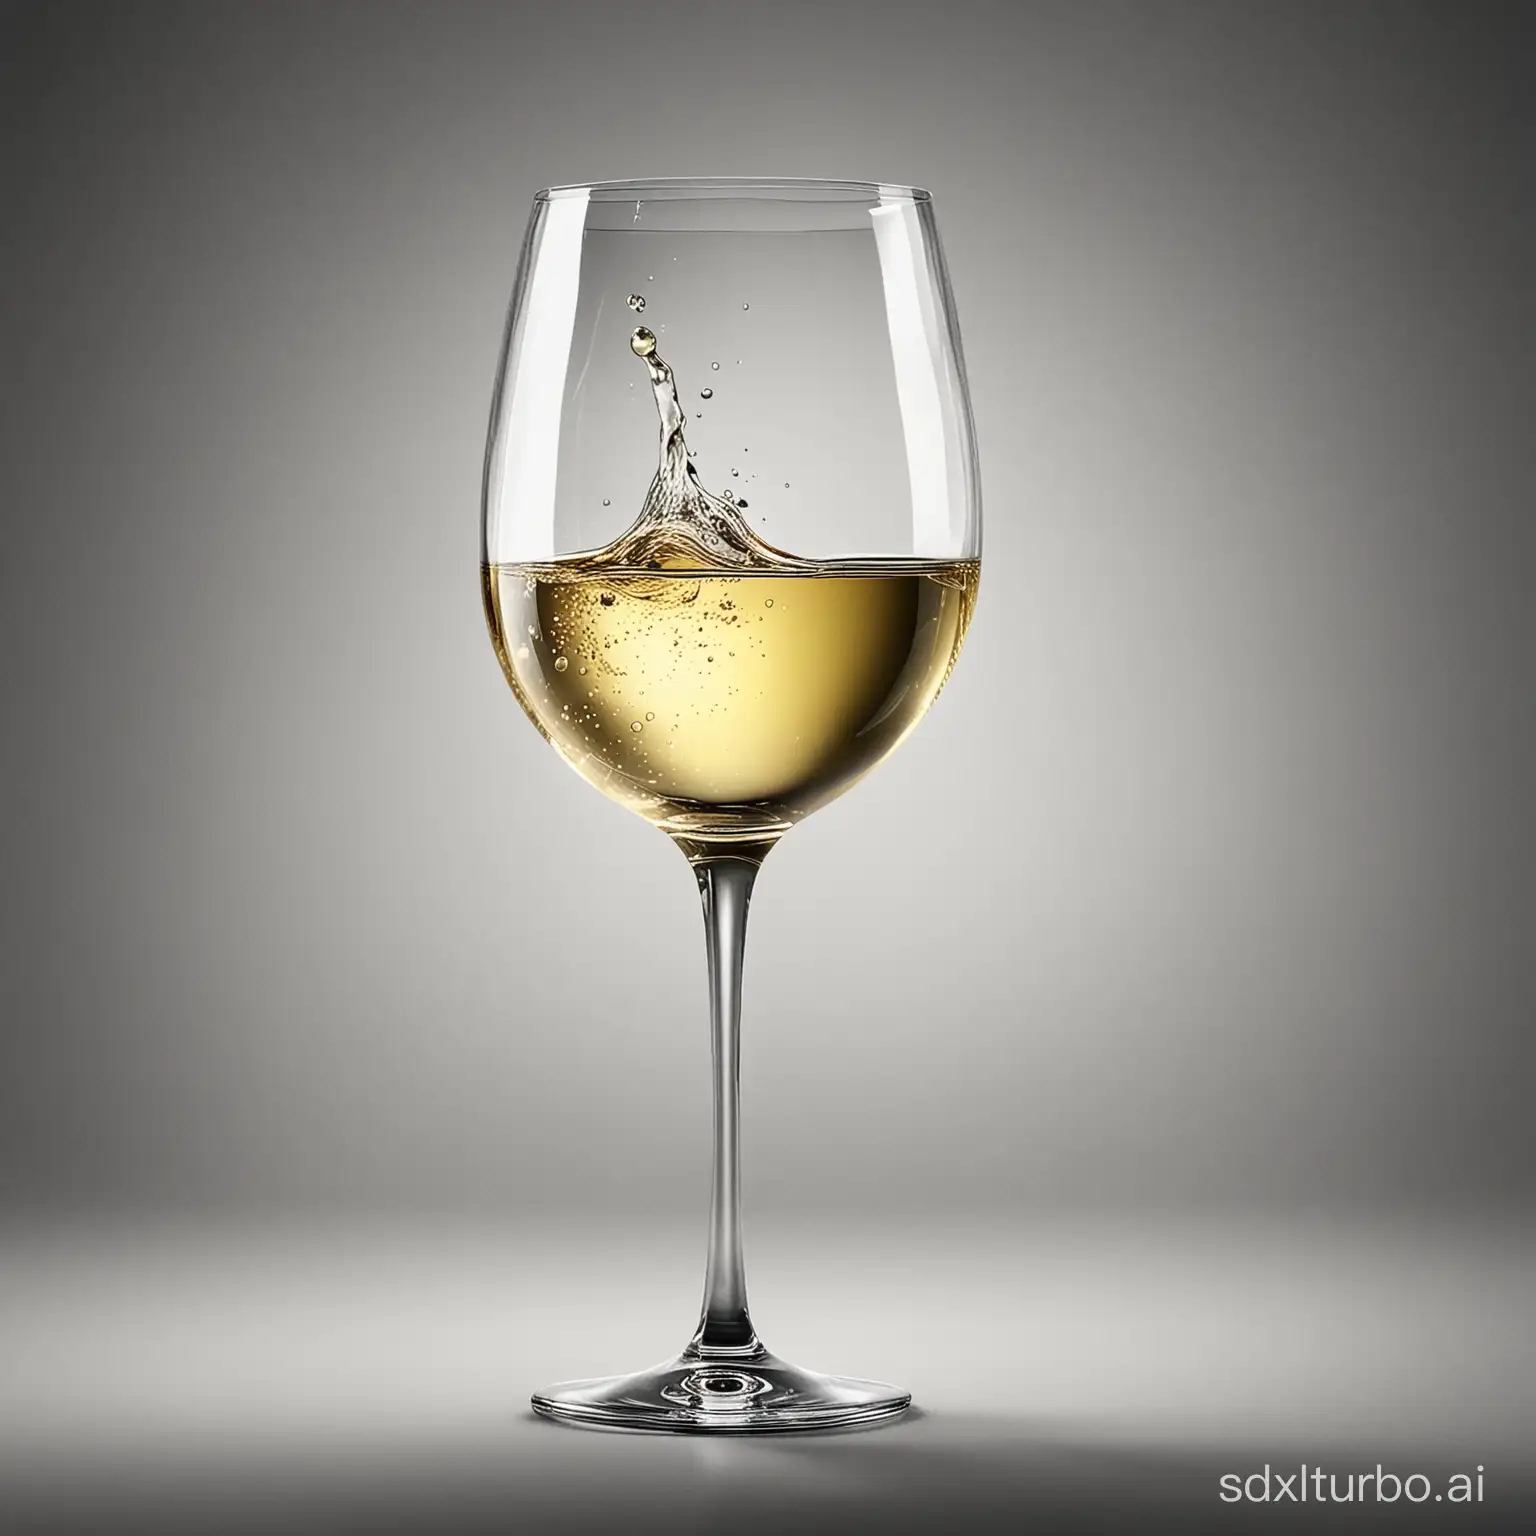 画一张葡萄酒杯的时尚海报，酒杯中的酒为白葡萄酒，要求，奢华，大气，高档。